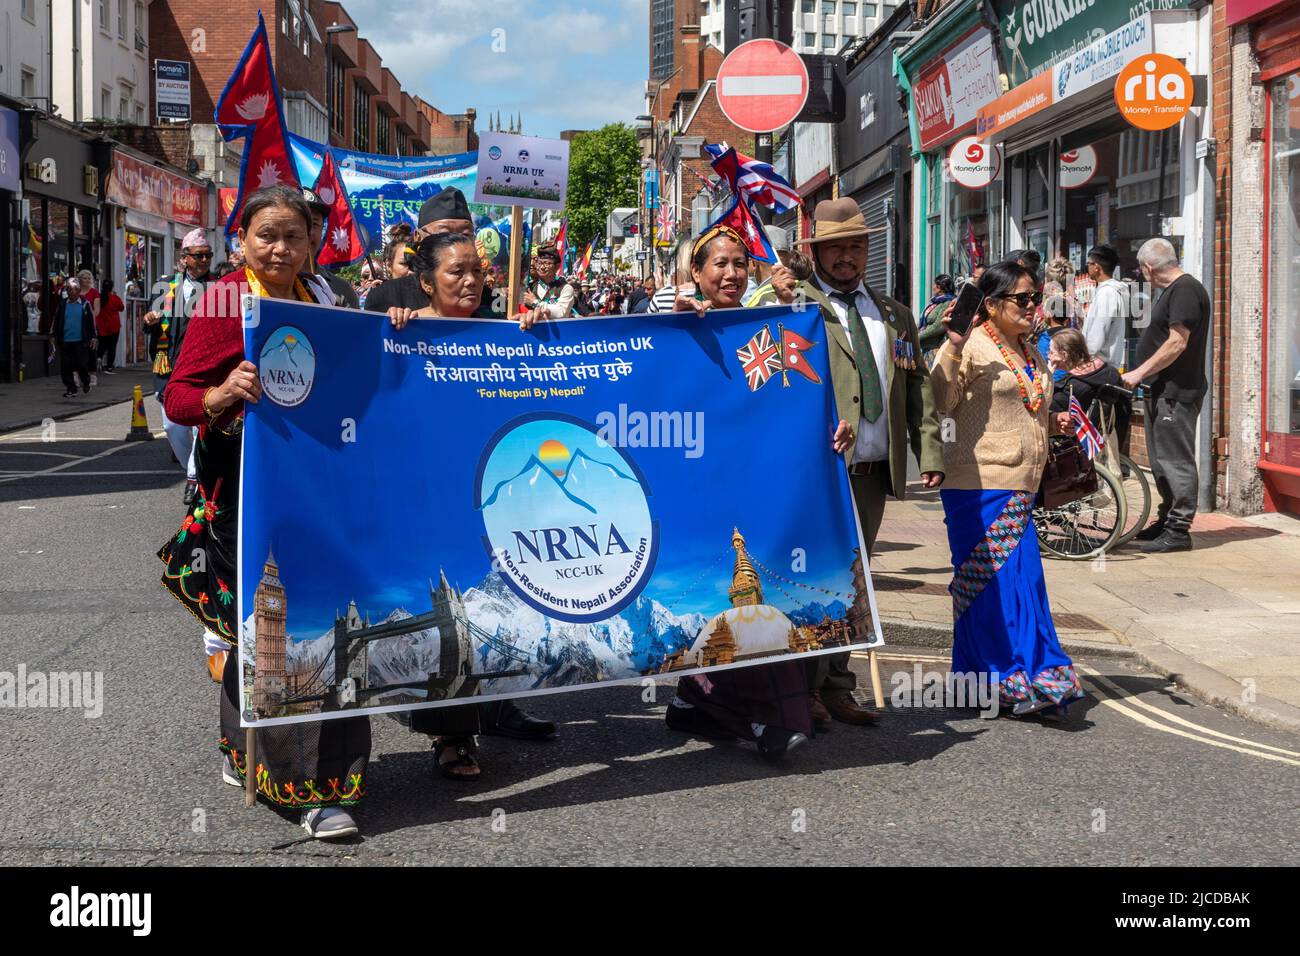 Association népalaise non-résidente du Royaume-Uni prenant part au Grand Parade à la fête de Victoria, un événement annuel à Aldershot, Hampshire, Angleterre, Royaume-Uni Banque D'Images